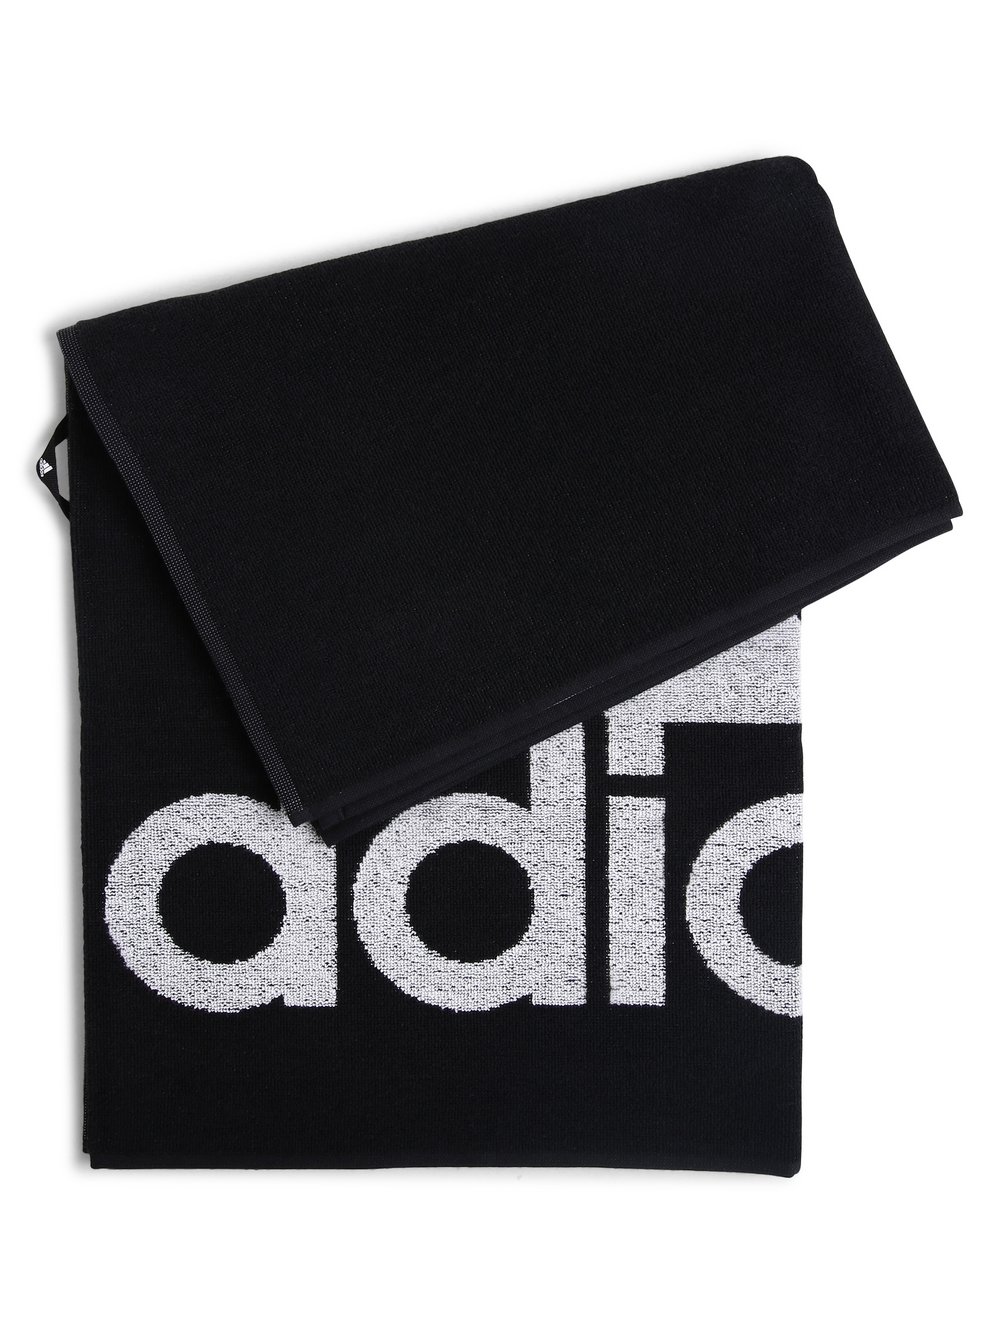 Adidas Performance - Ręcznik męski, czarny|biały